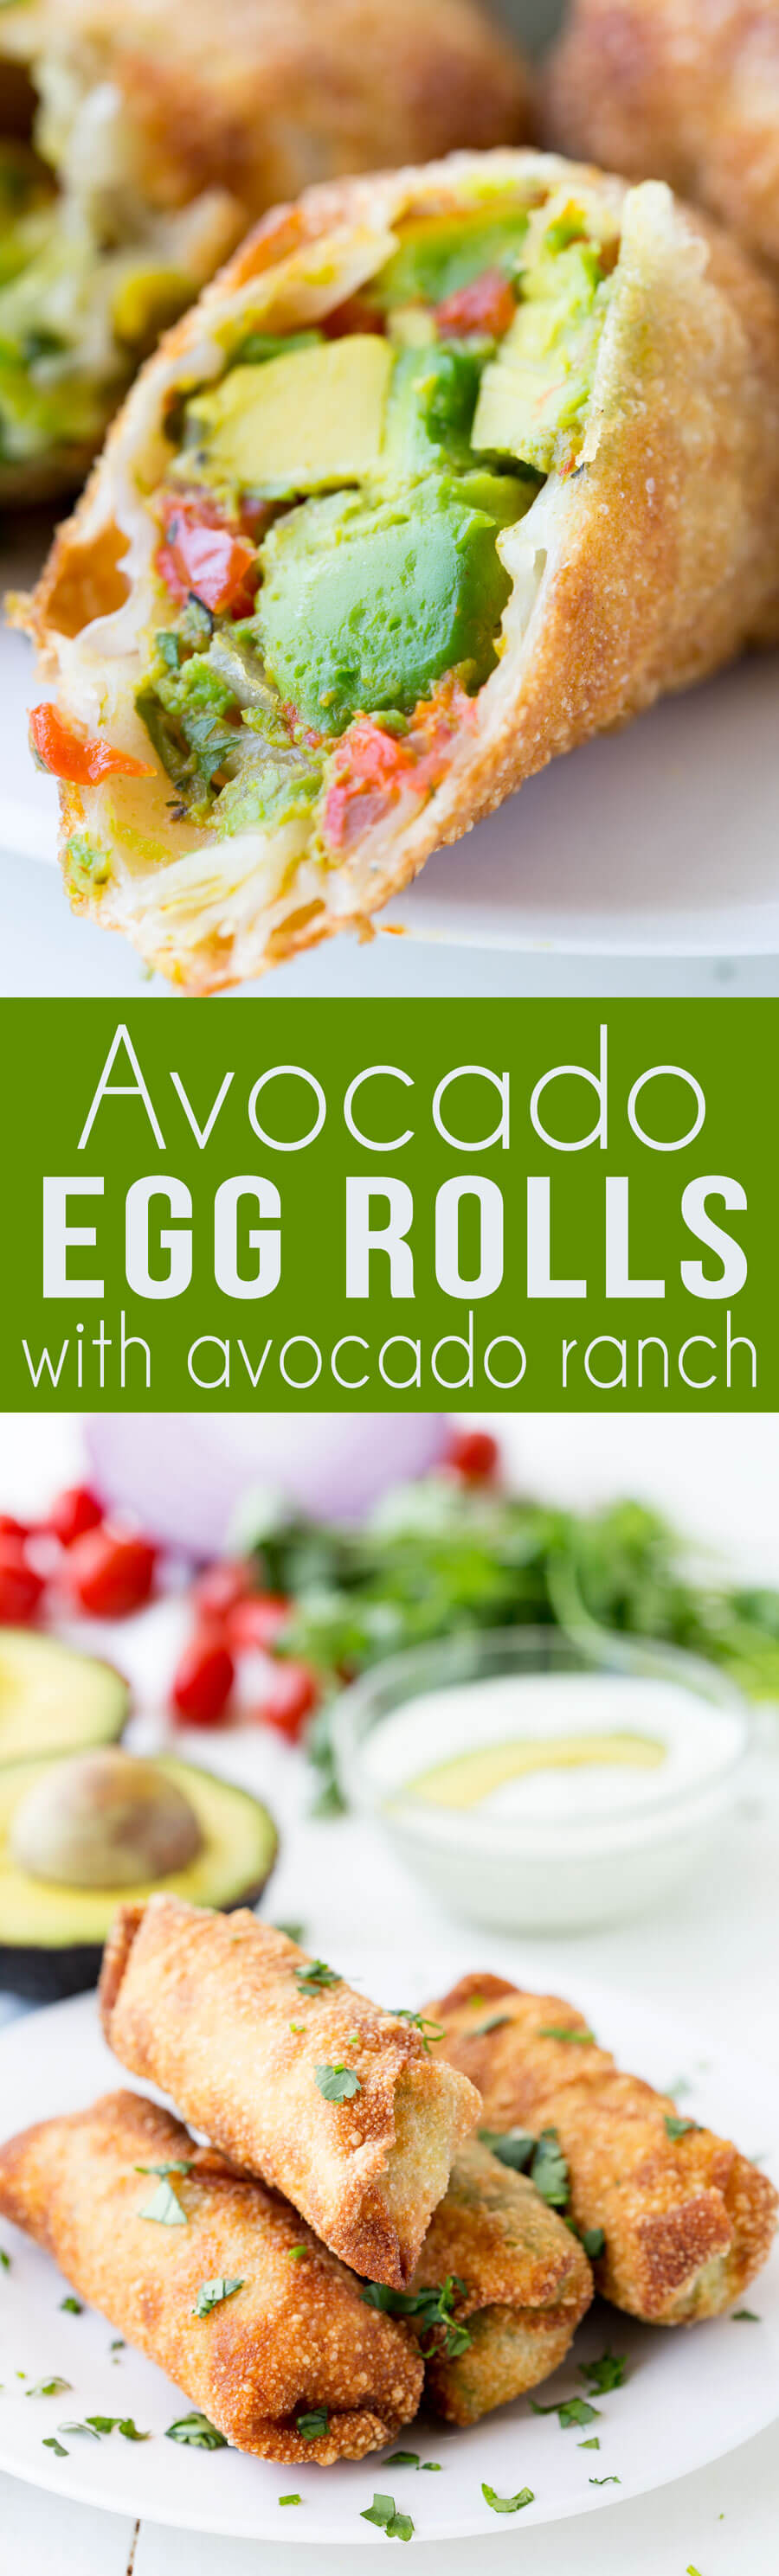 Avocado Egg Roll with creamy avocado ranch dipping sauce